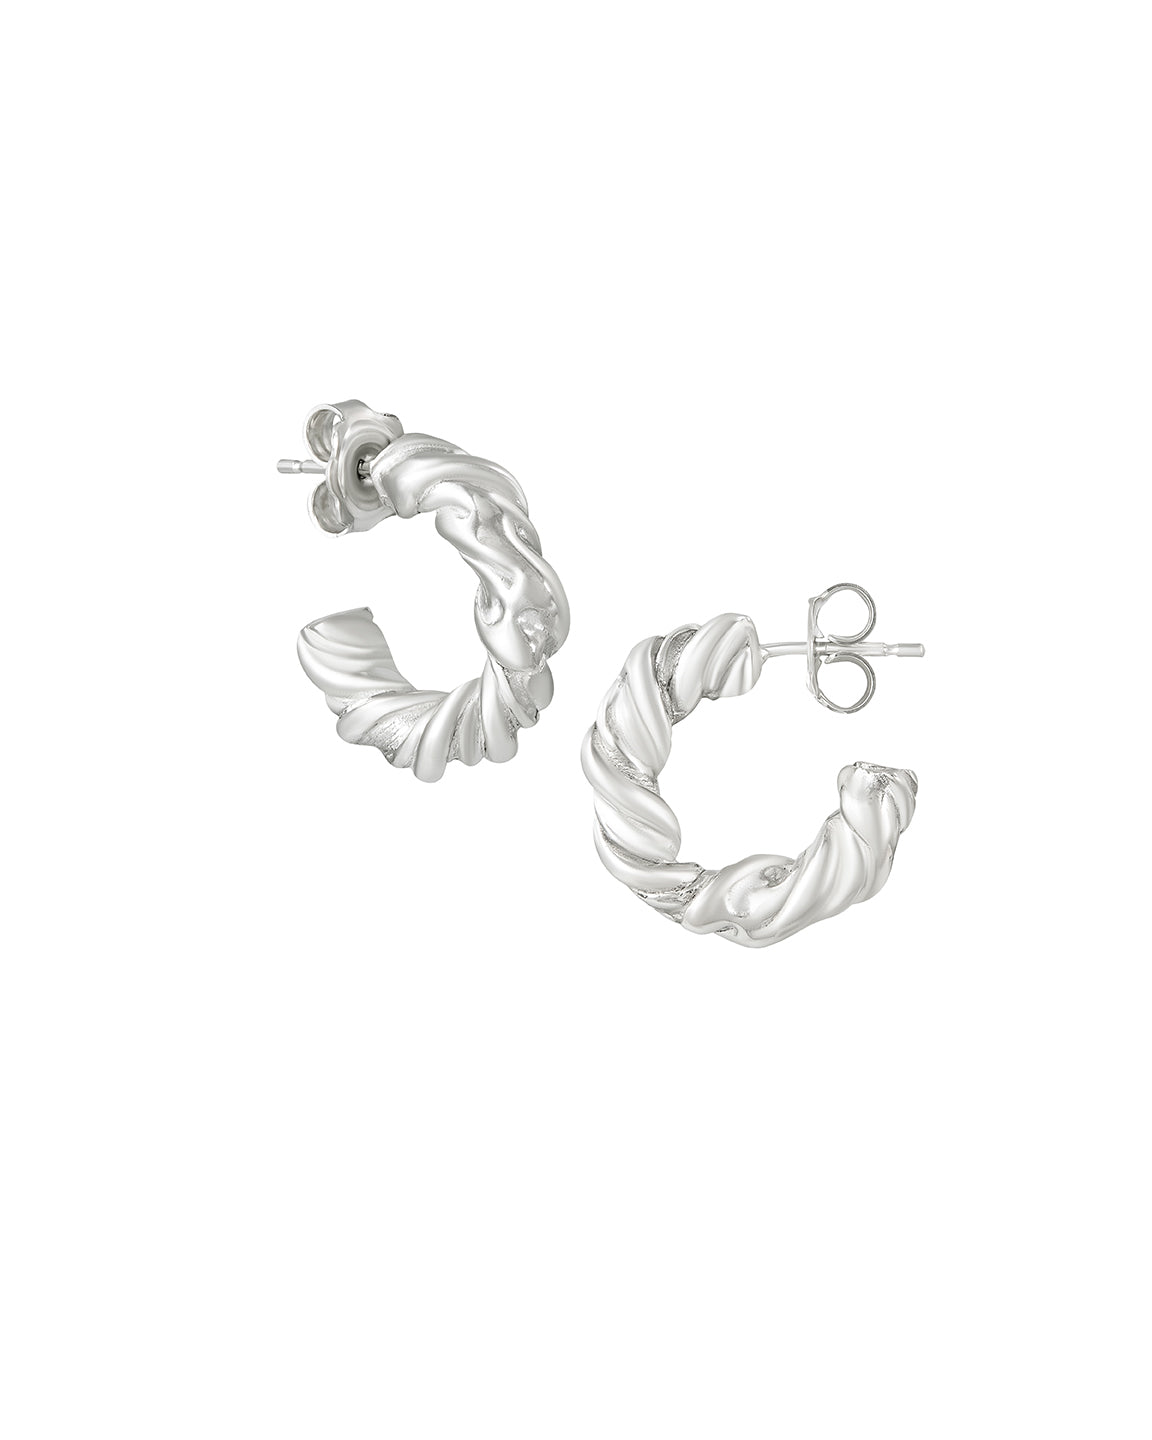 Twisted Hoop Earrings | Recycled Silver